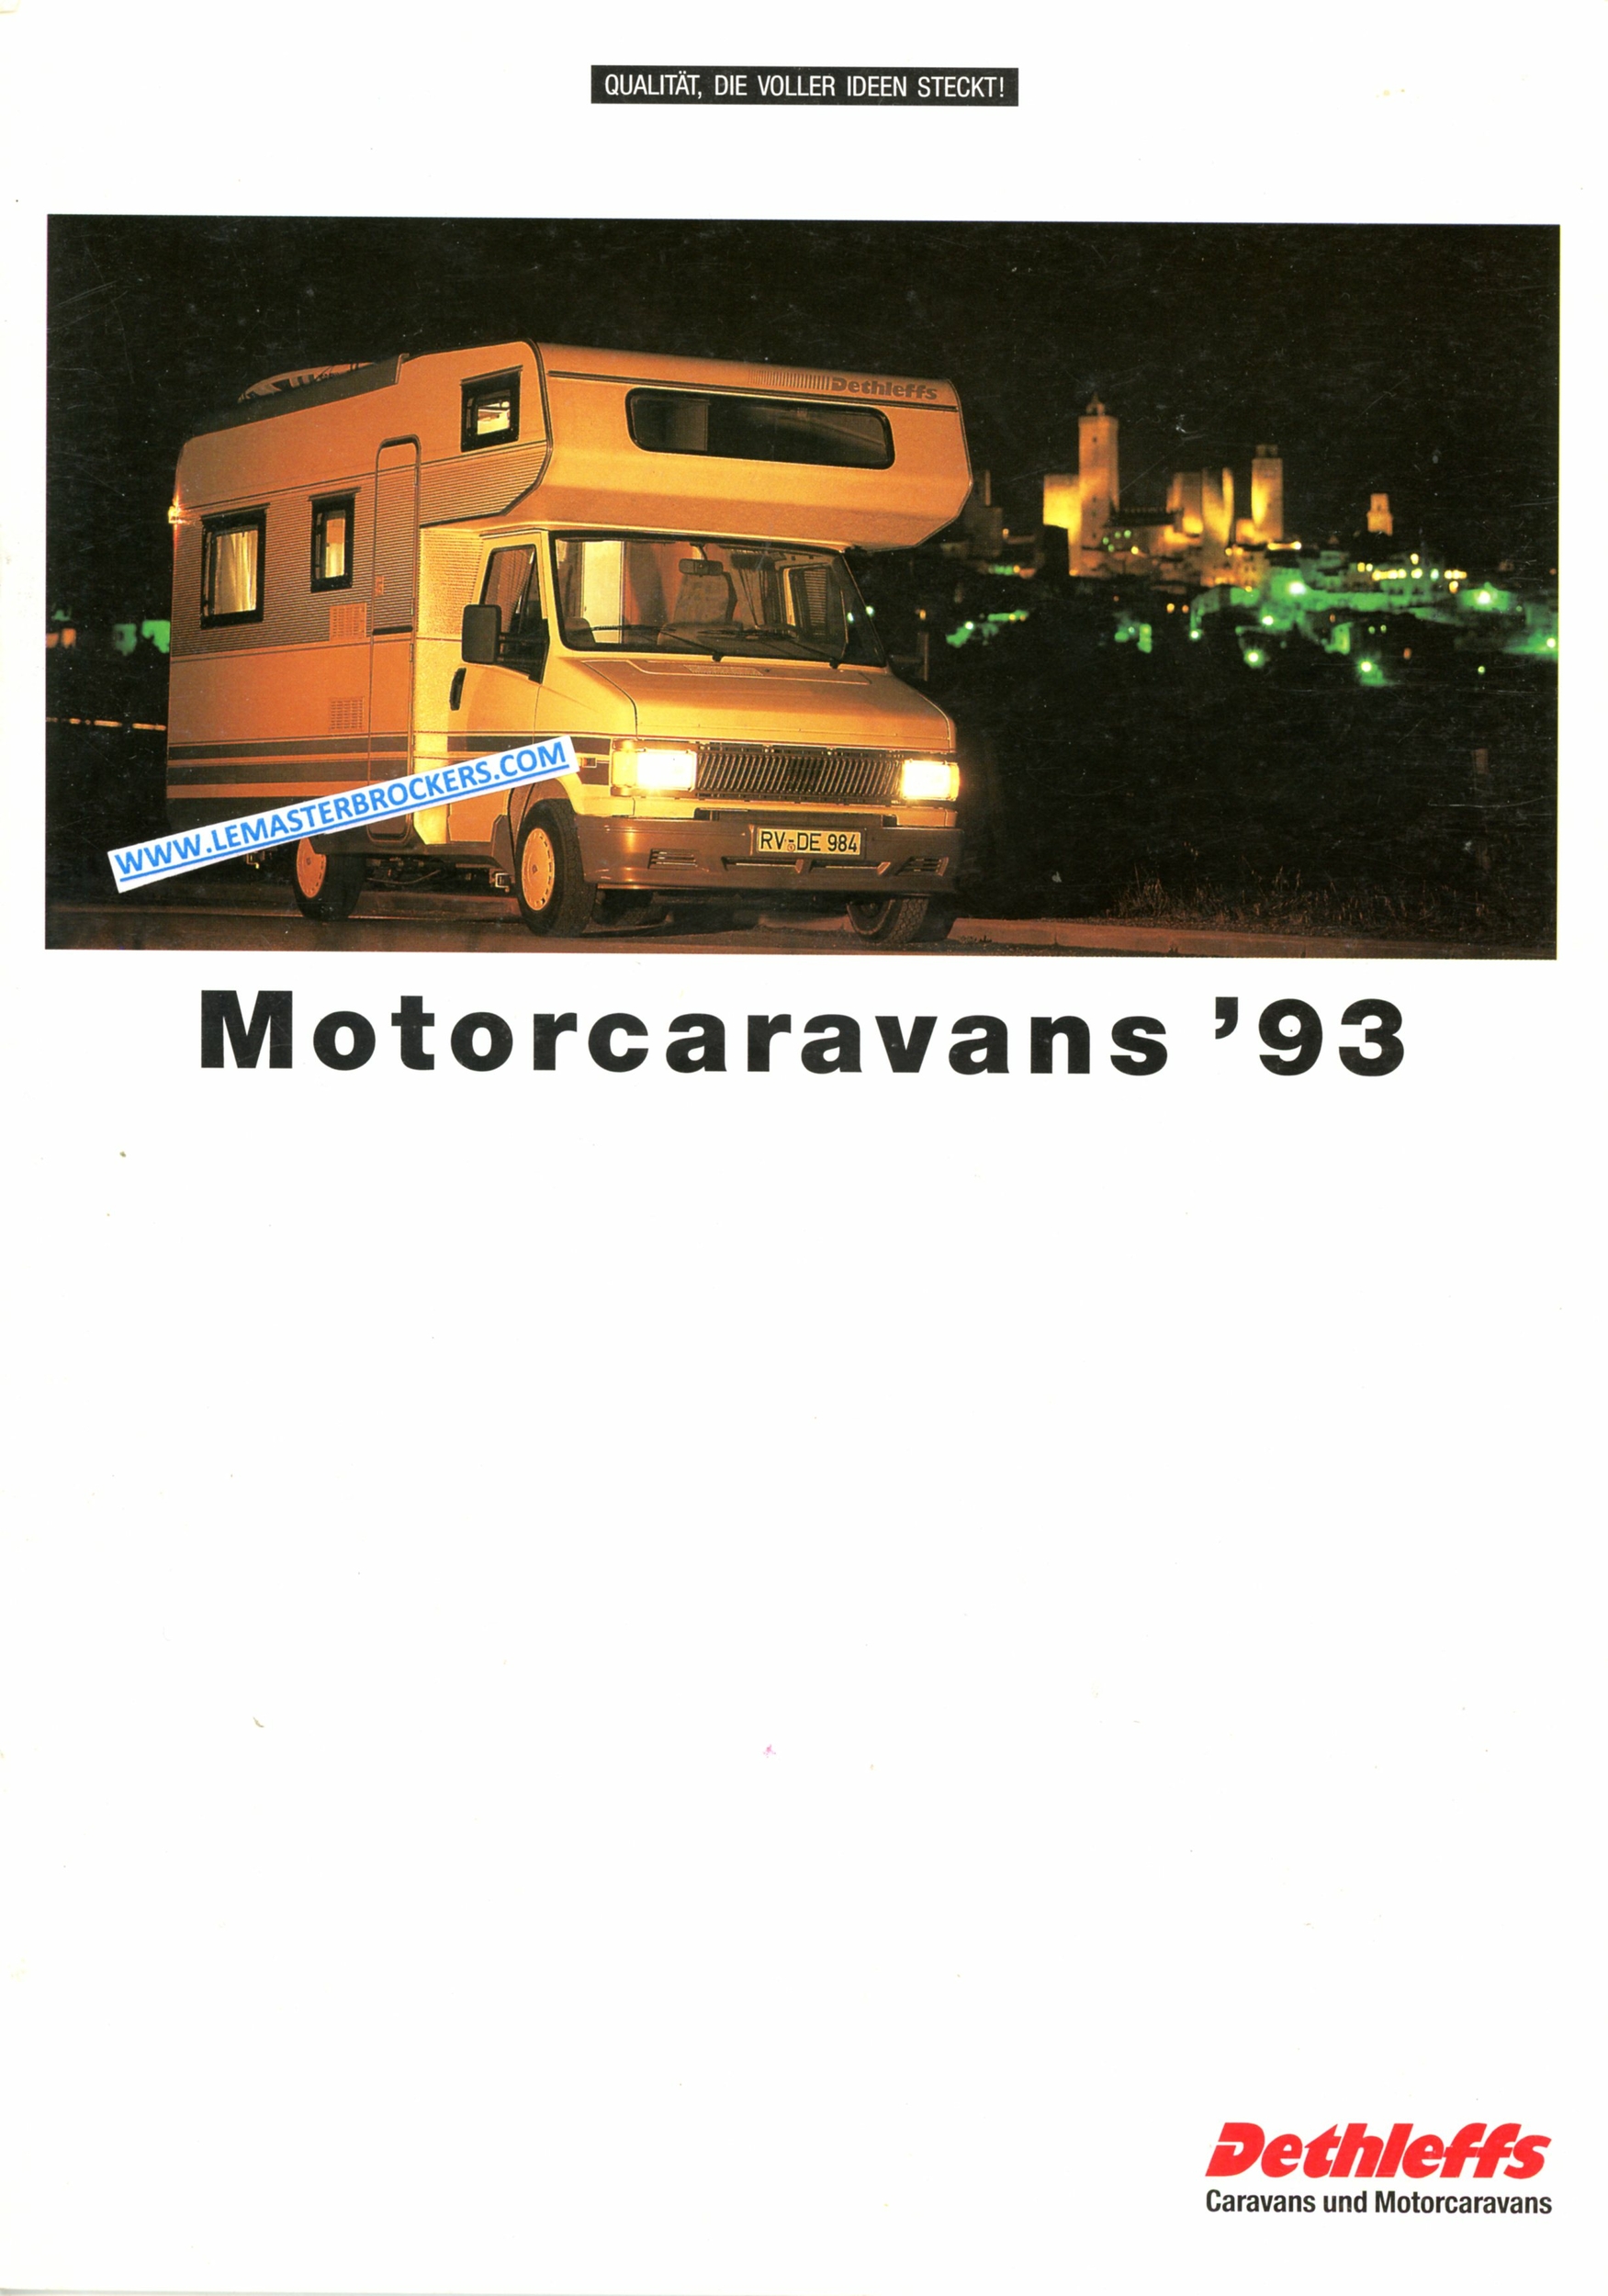 BROCHURE DETHLEFFS 1993 MOTORCARAVANS GLOBETROTTER A H I BUS B CAMPING CAR VINTAGE-LEMASTERBROCKERS